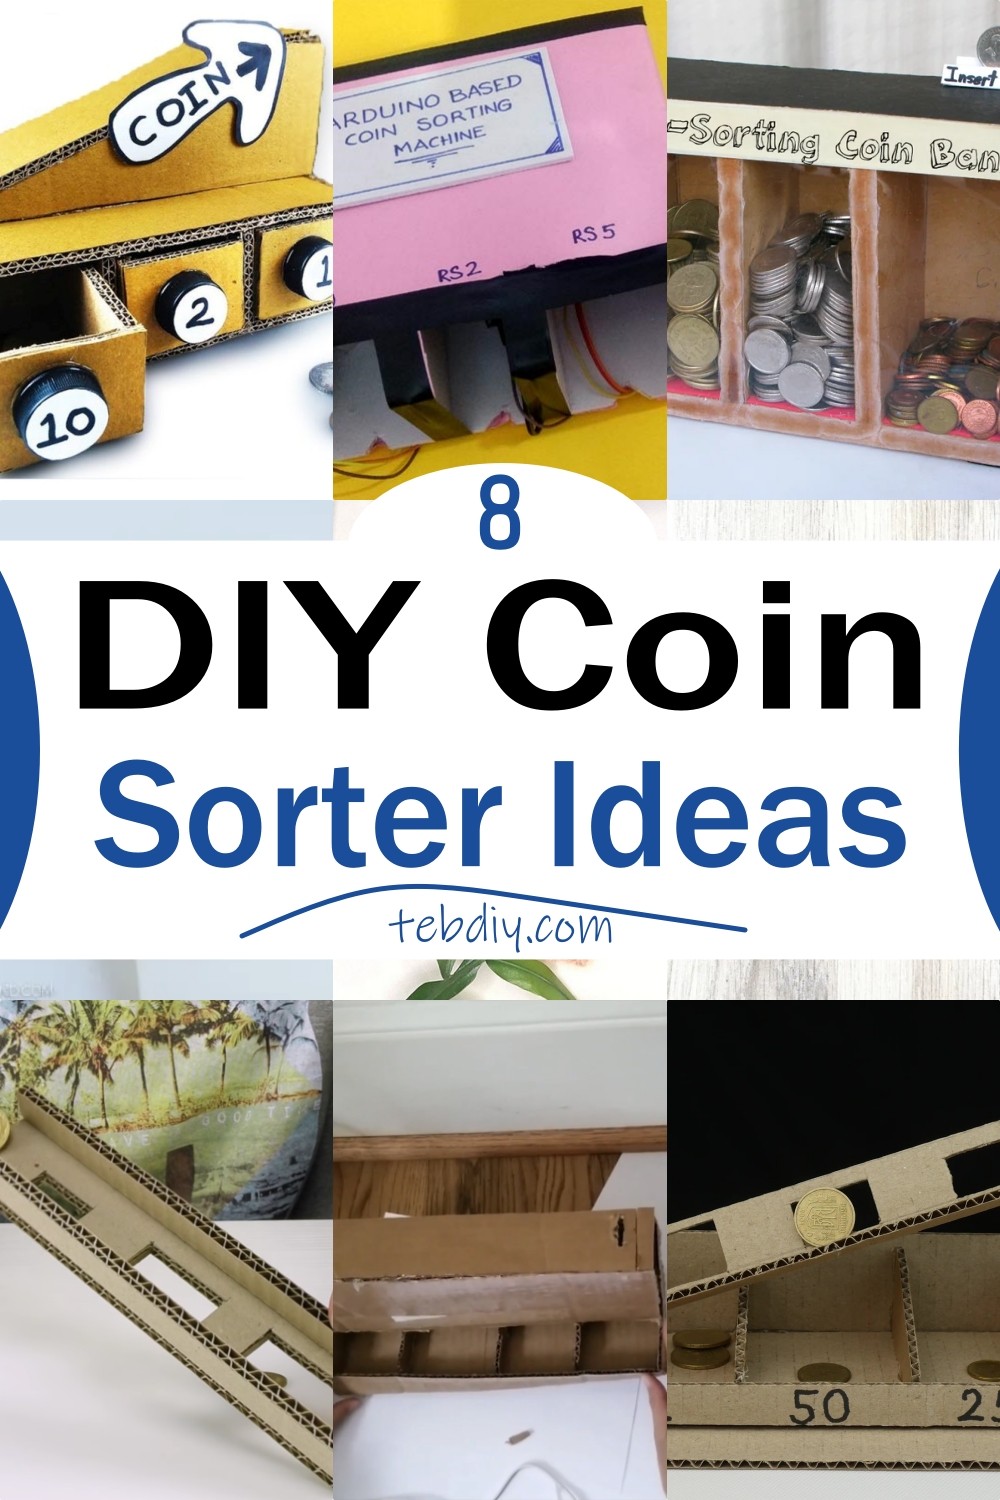 DIY Coin Sorter Ideas